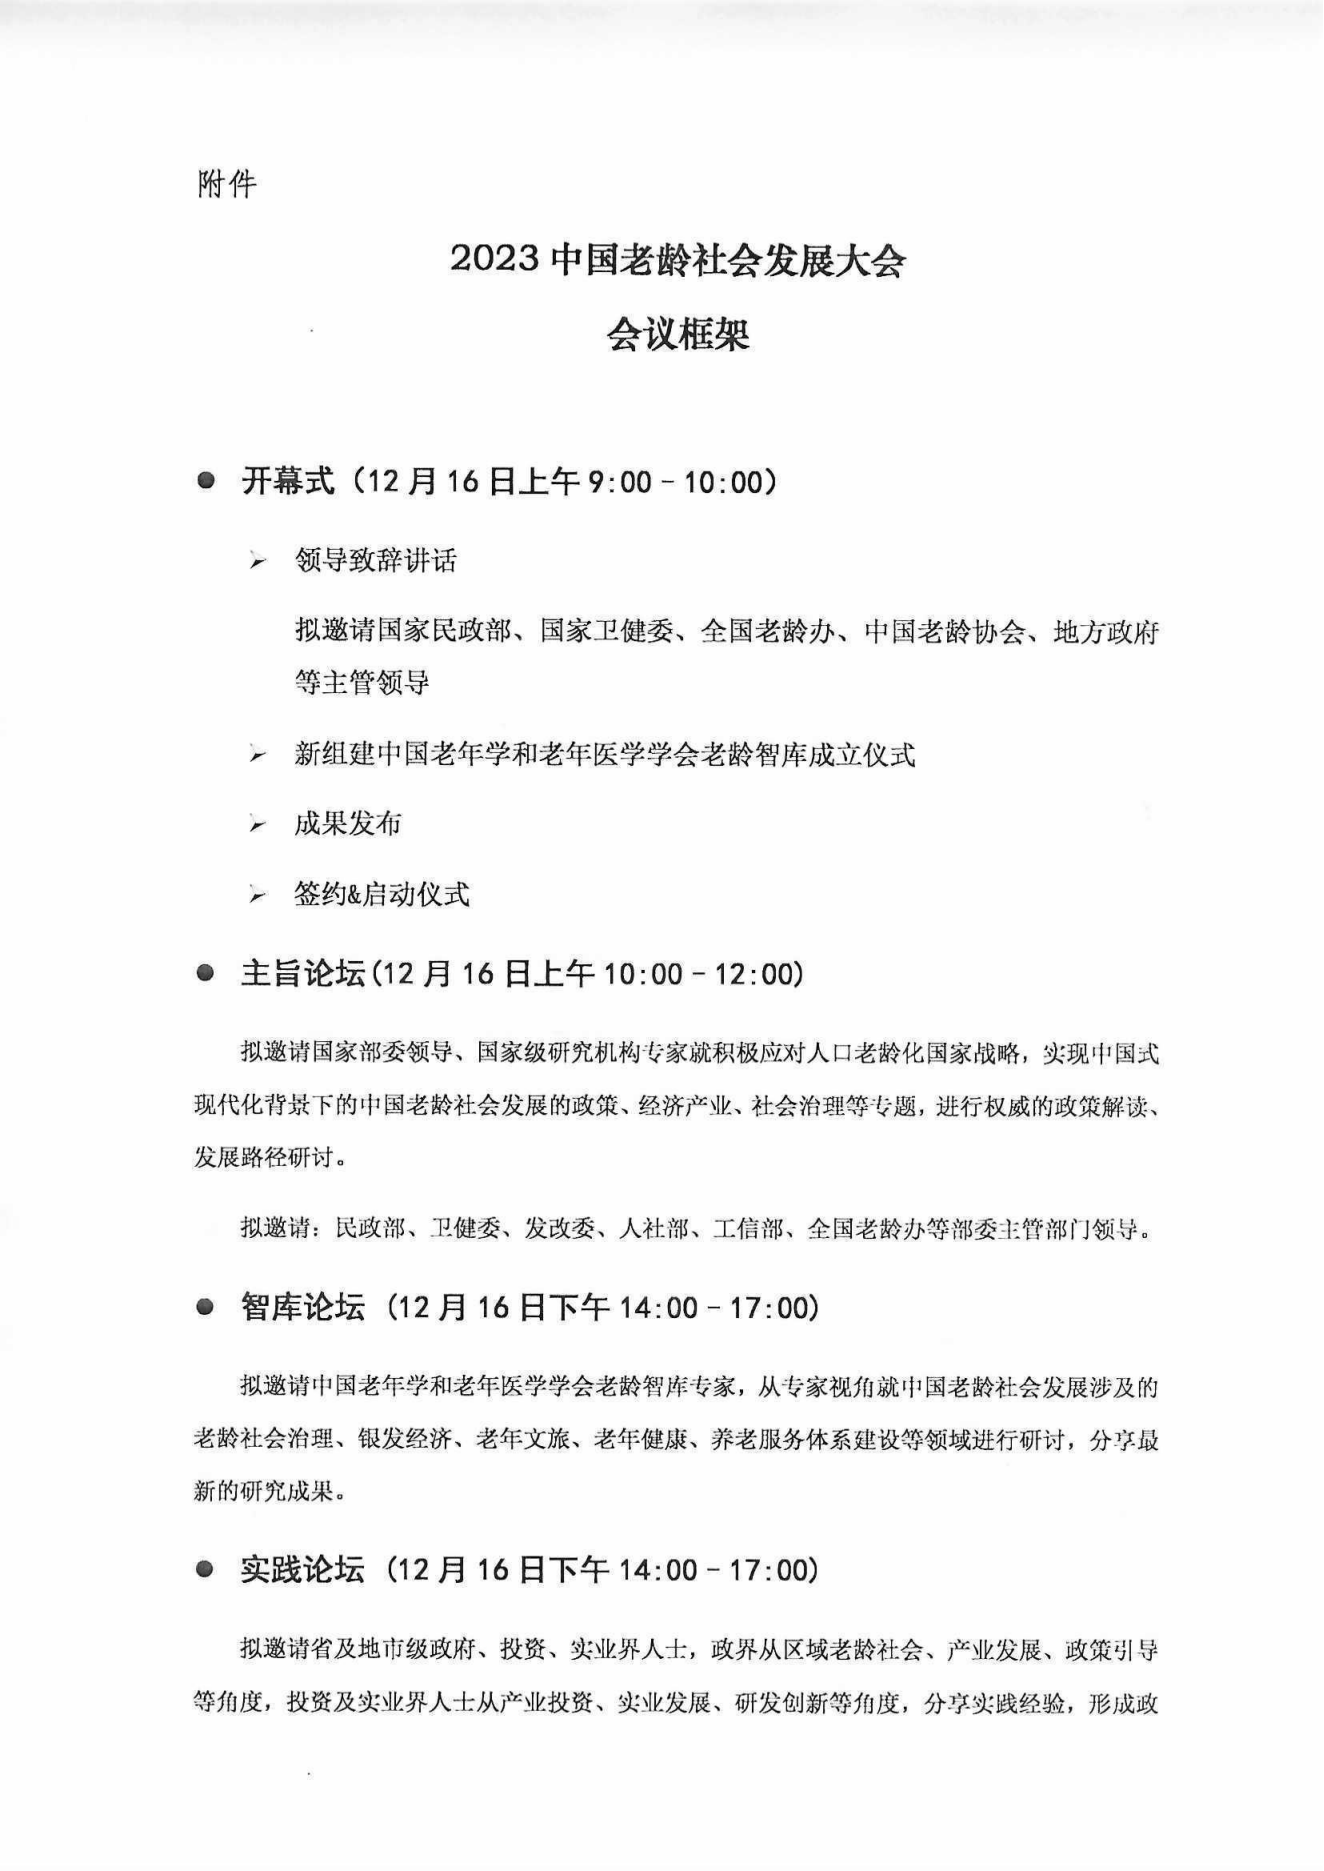 2023中国老龄社会发展大会（盖章件）2023年9月8日_03.png